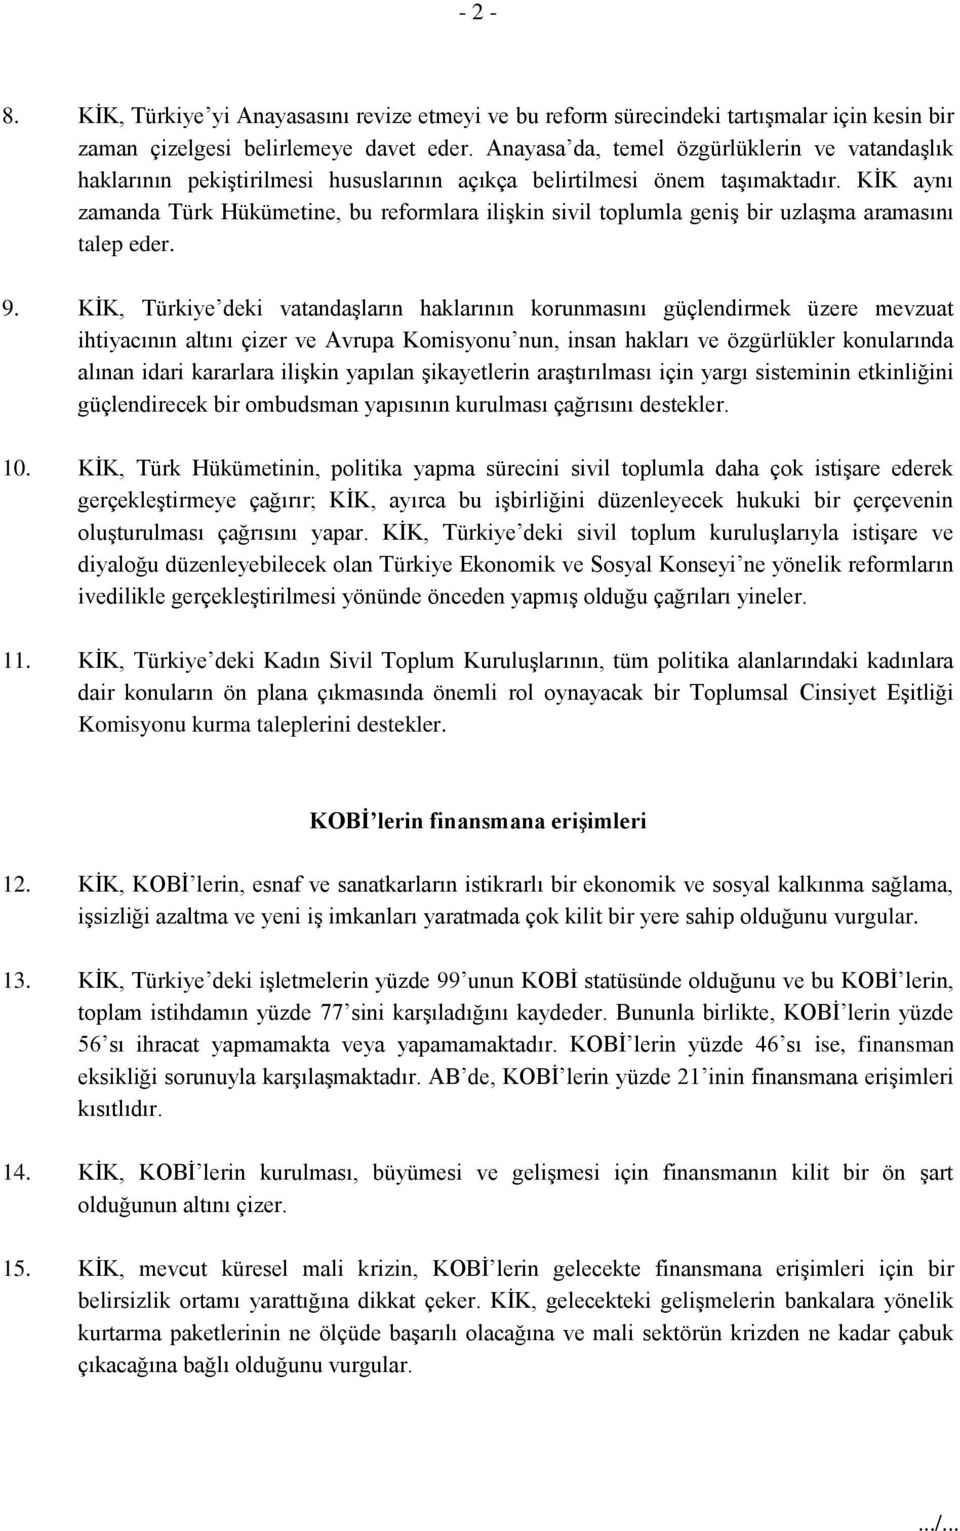 KİK aynı zamanda Türk Hükümetine, bu reformlara ilişkin sivil toplumla geniş bir uzlaşma aramasını talep eder. 9.